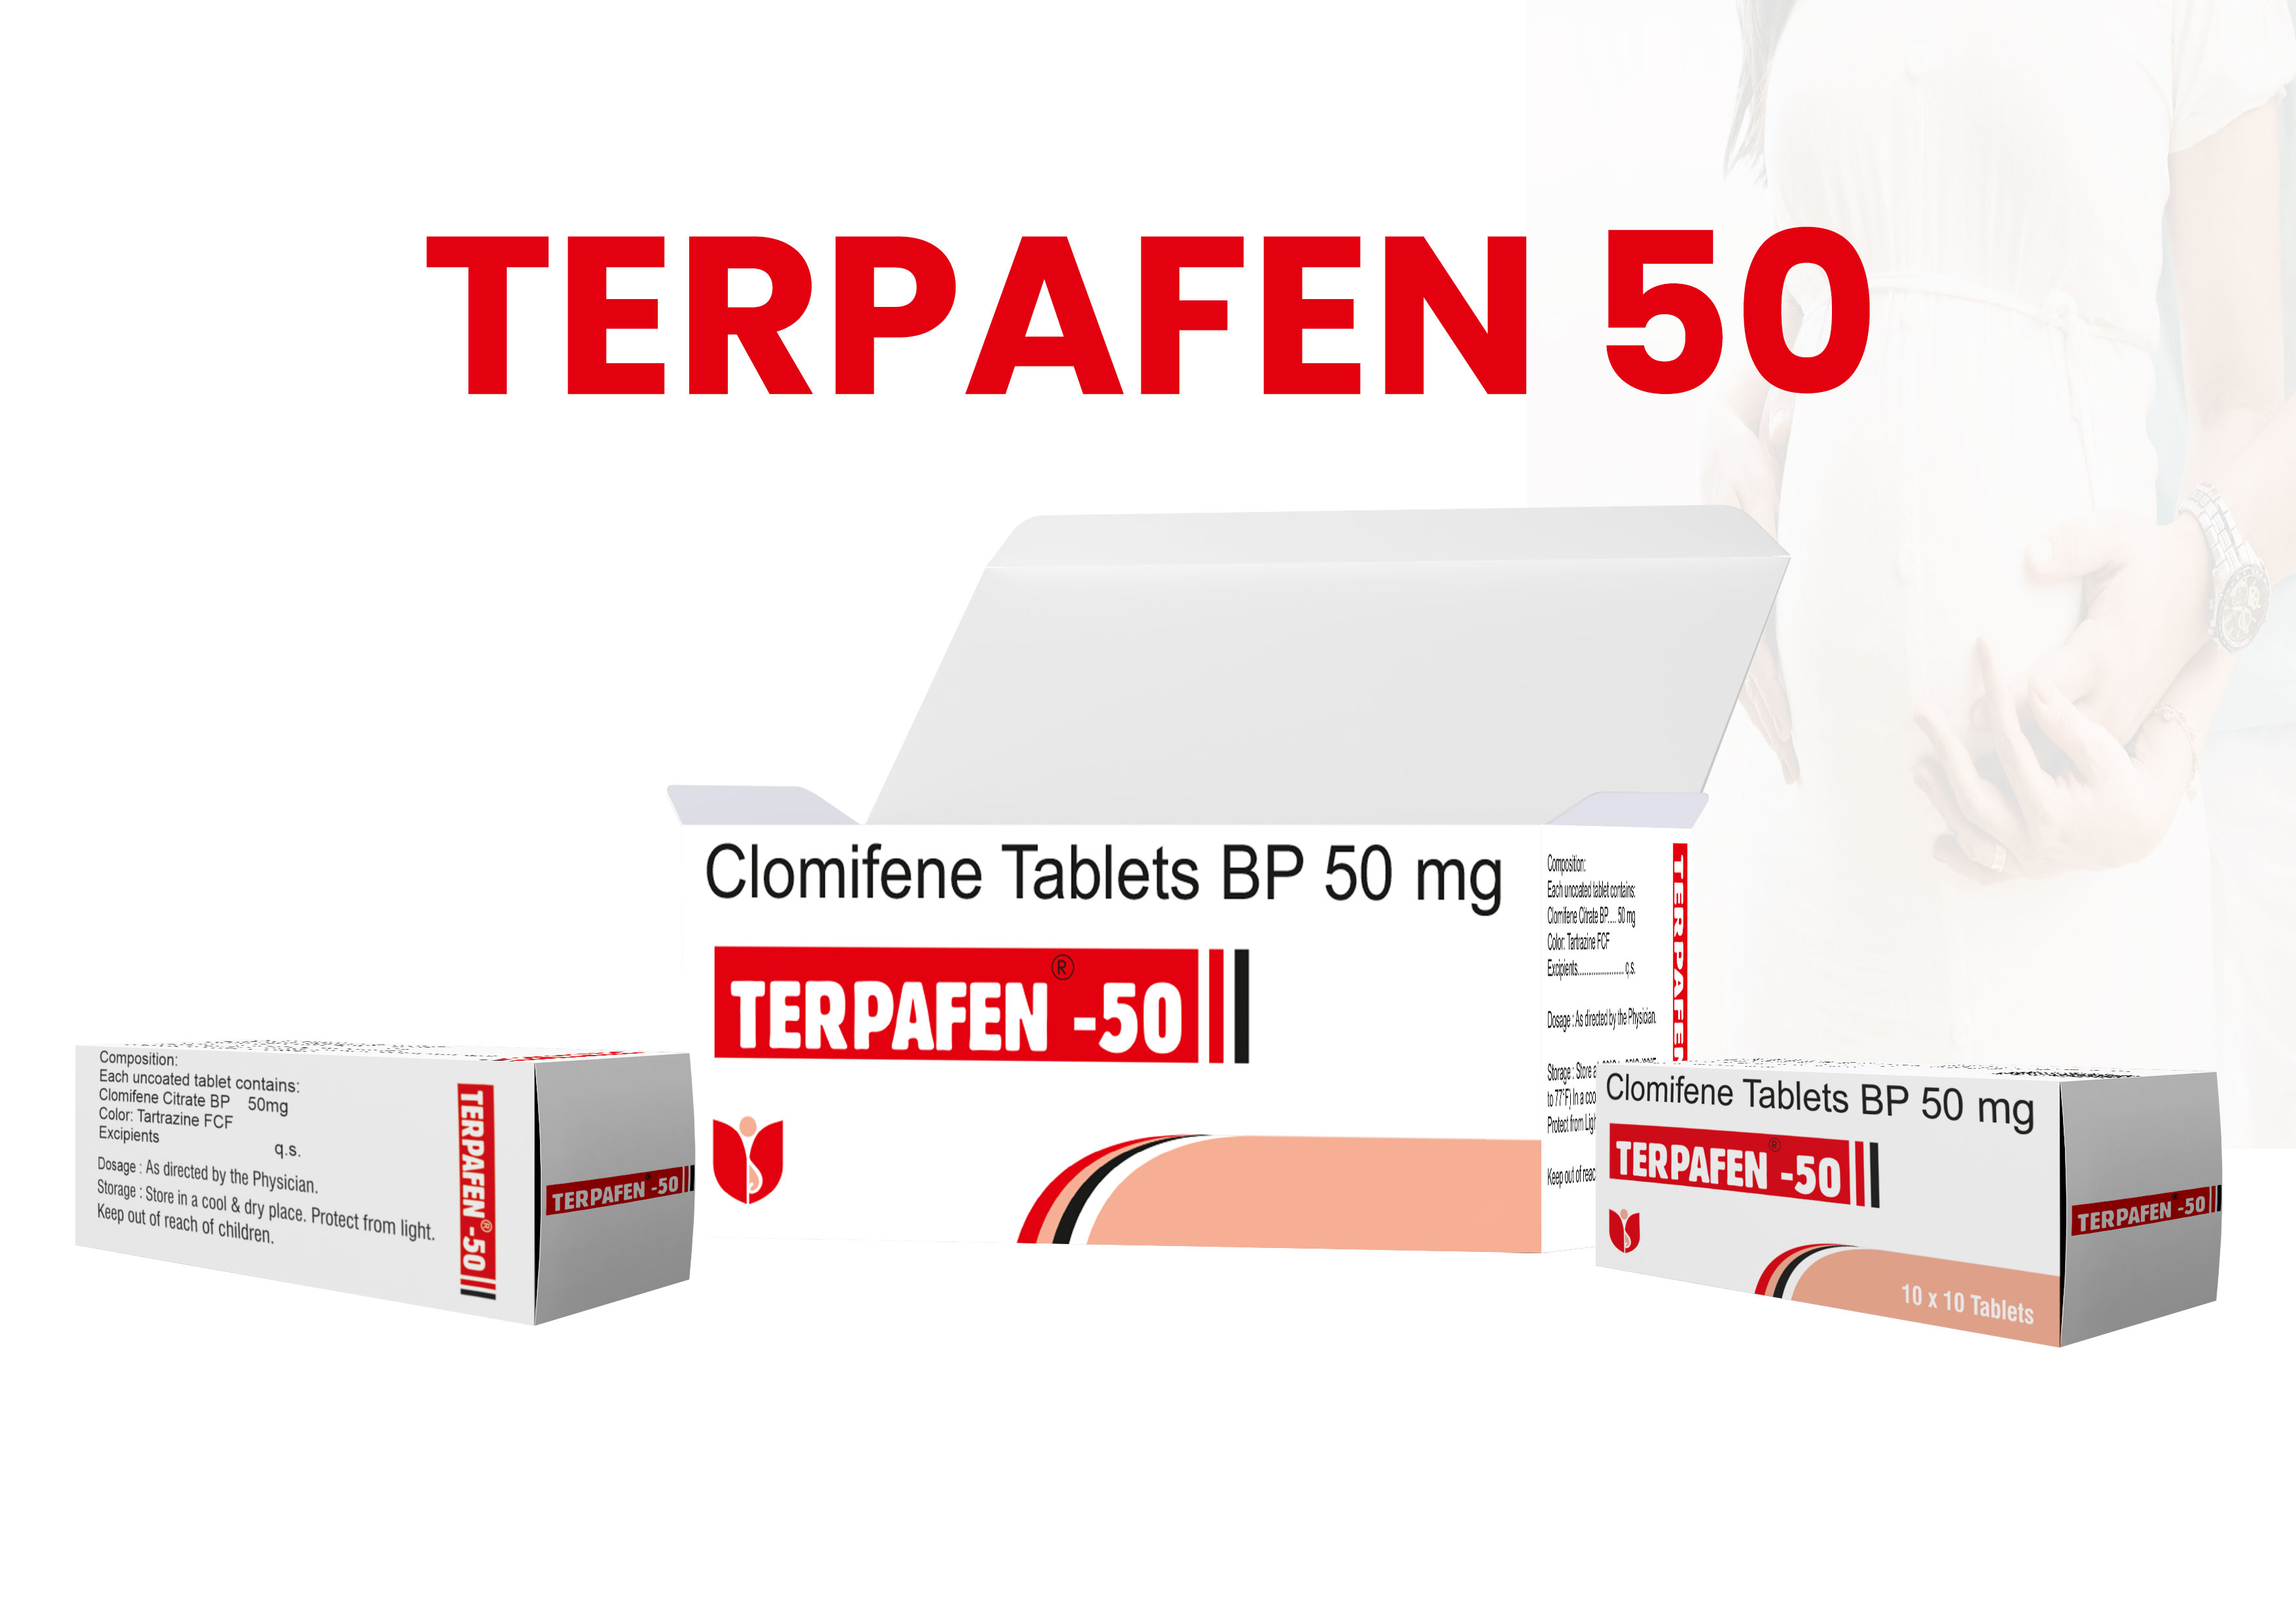 Clomifene Tablets BP 50 MG - Terpafen 50